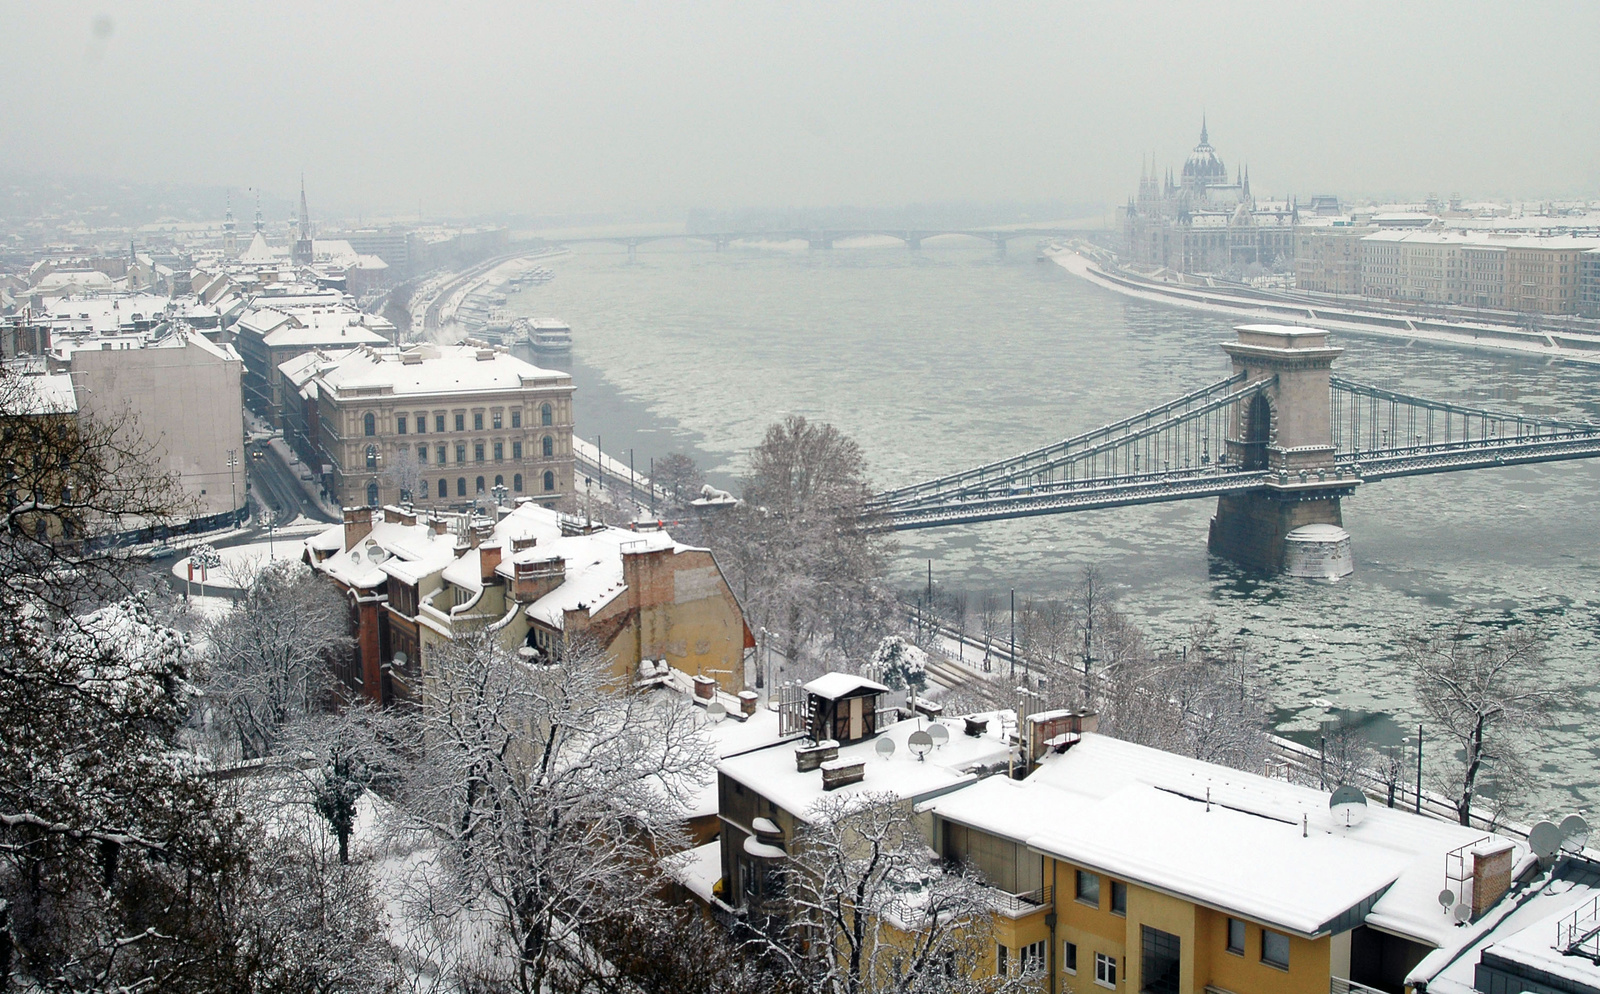 Havas háztetők és jeges Duna